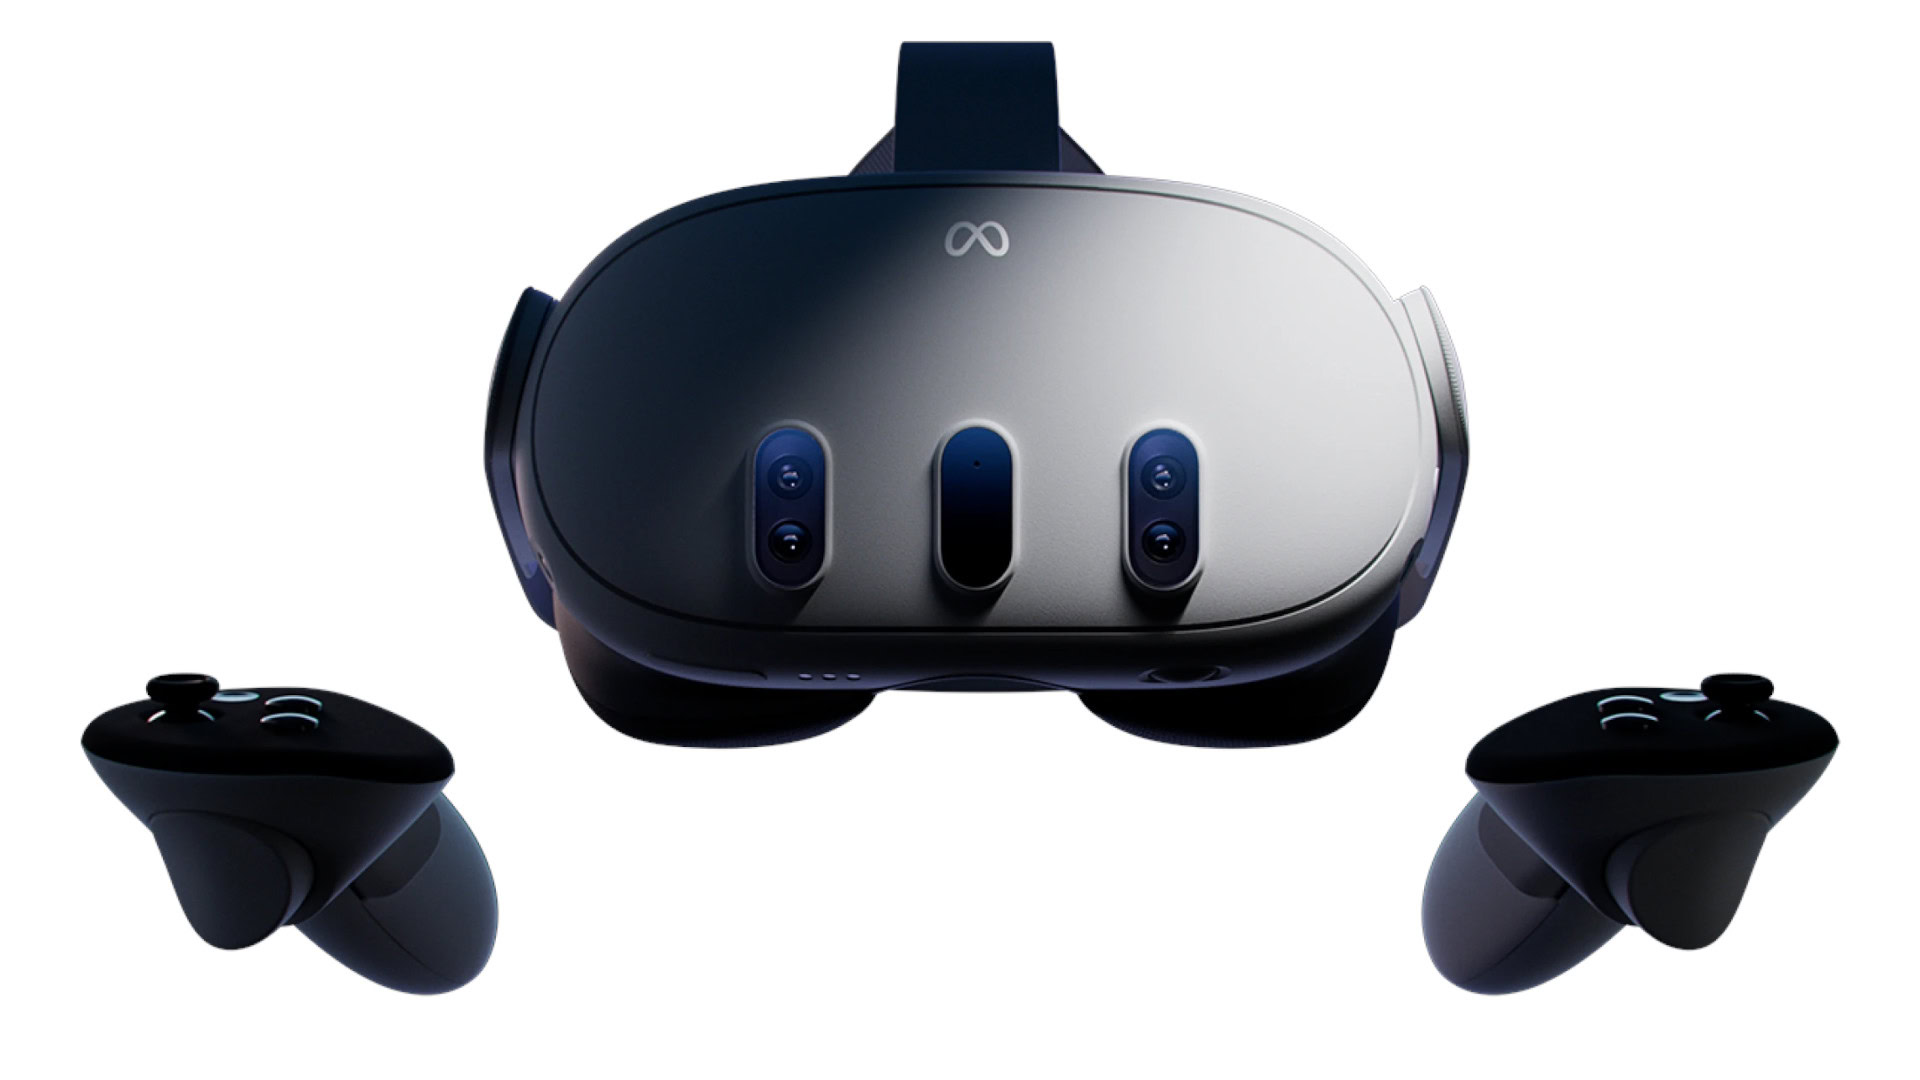 PowerWash Simulator VR Announced For MetaQuest 3